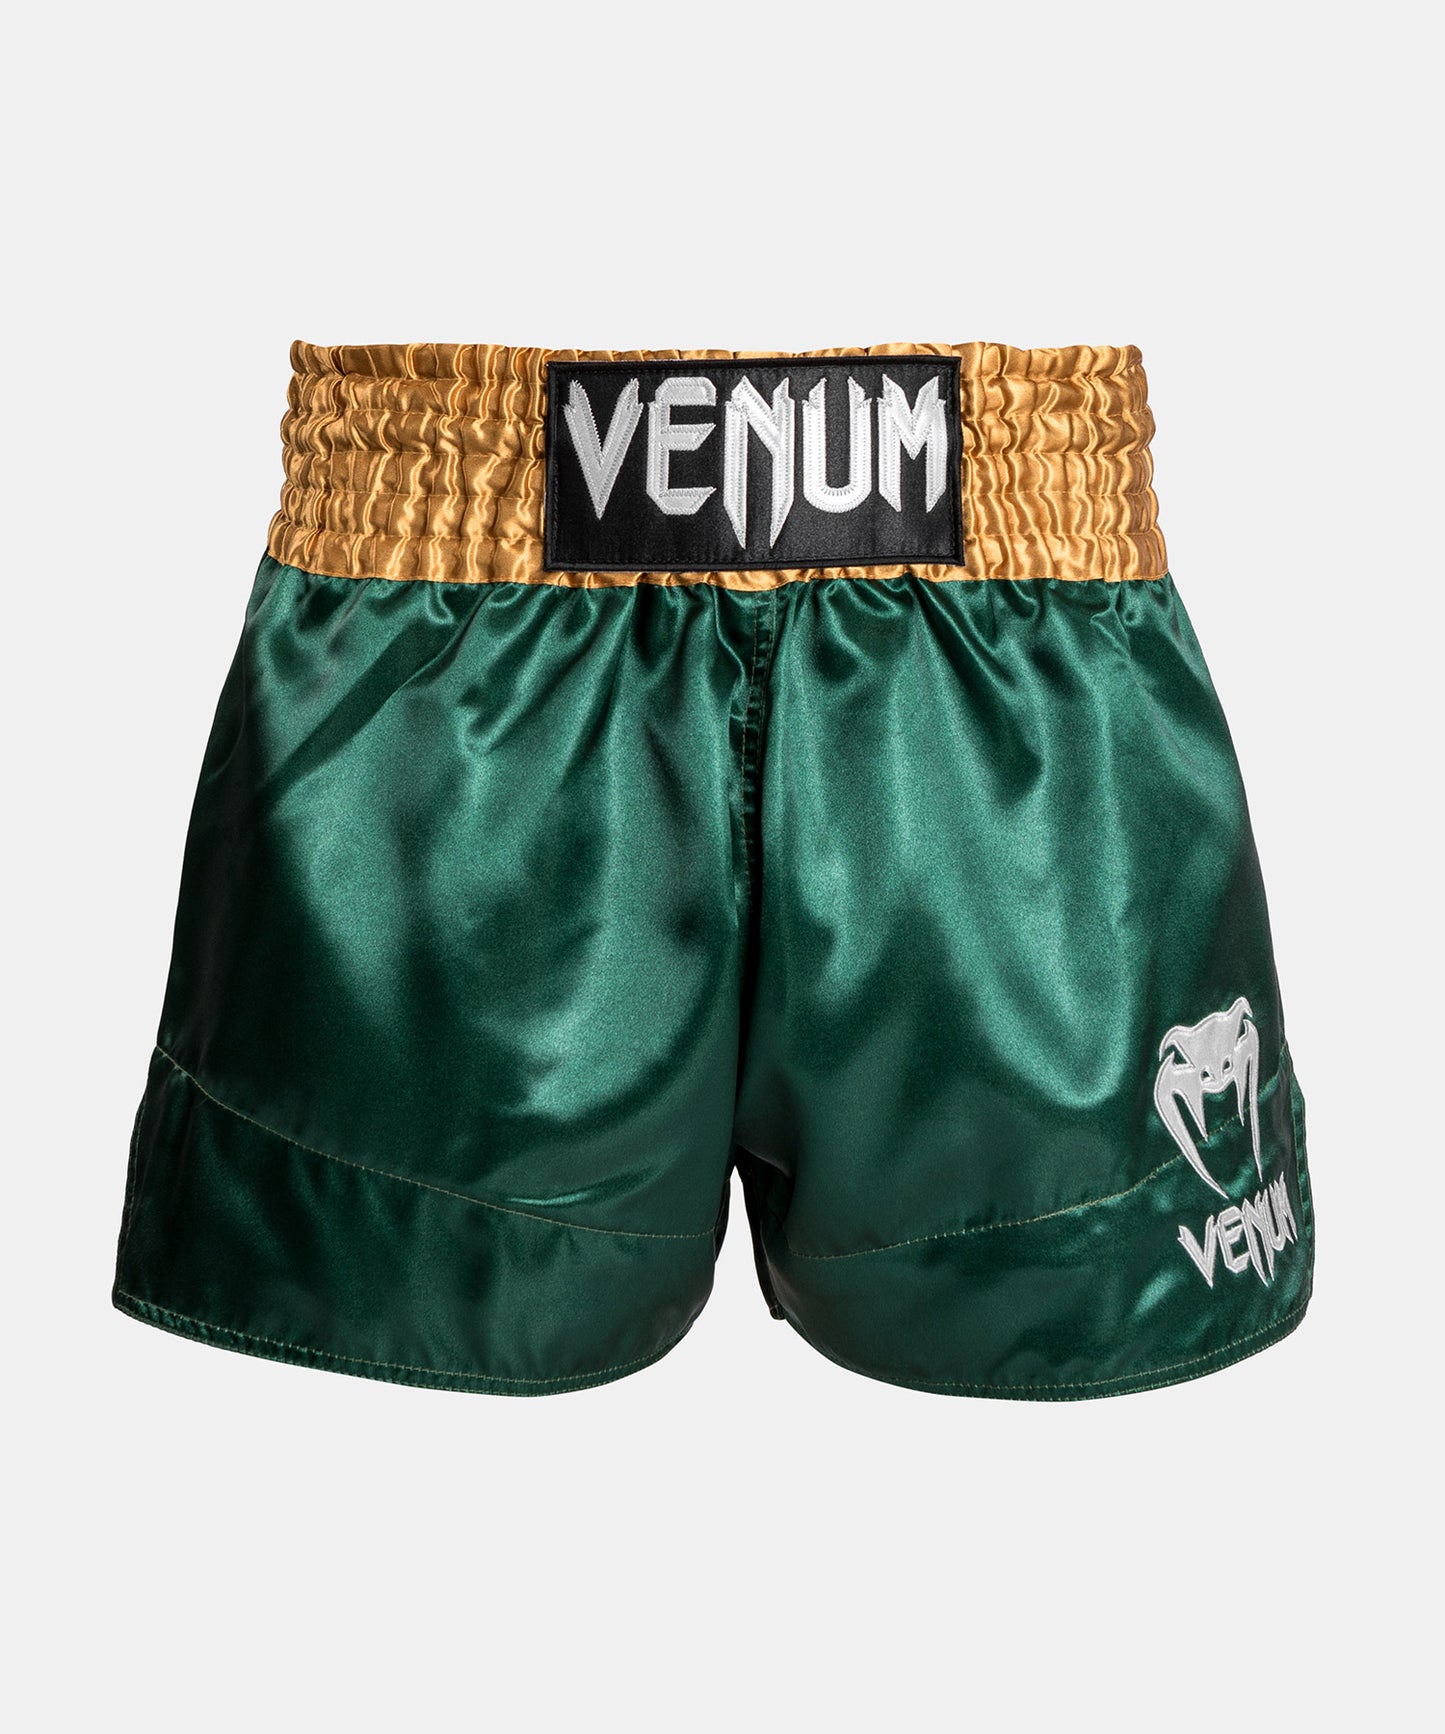 Venum Classic - Шорты Muay Thaï Short - зеленый/золотой/белый